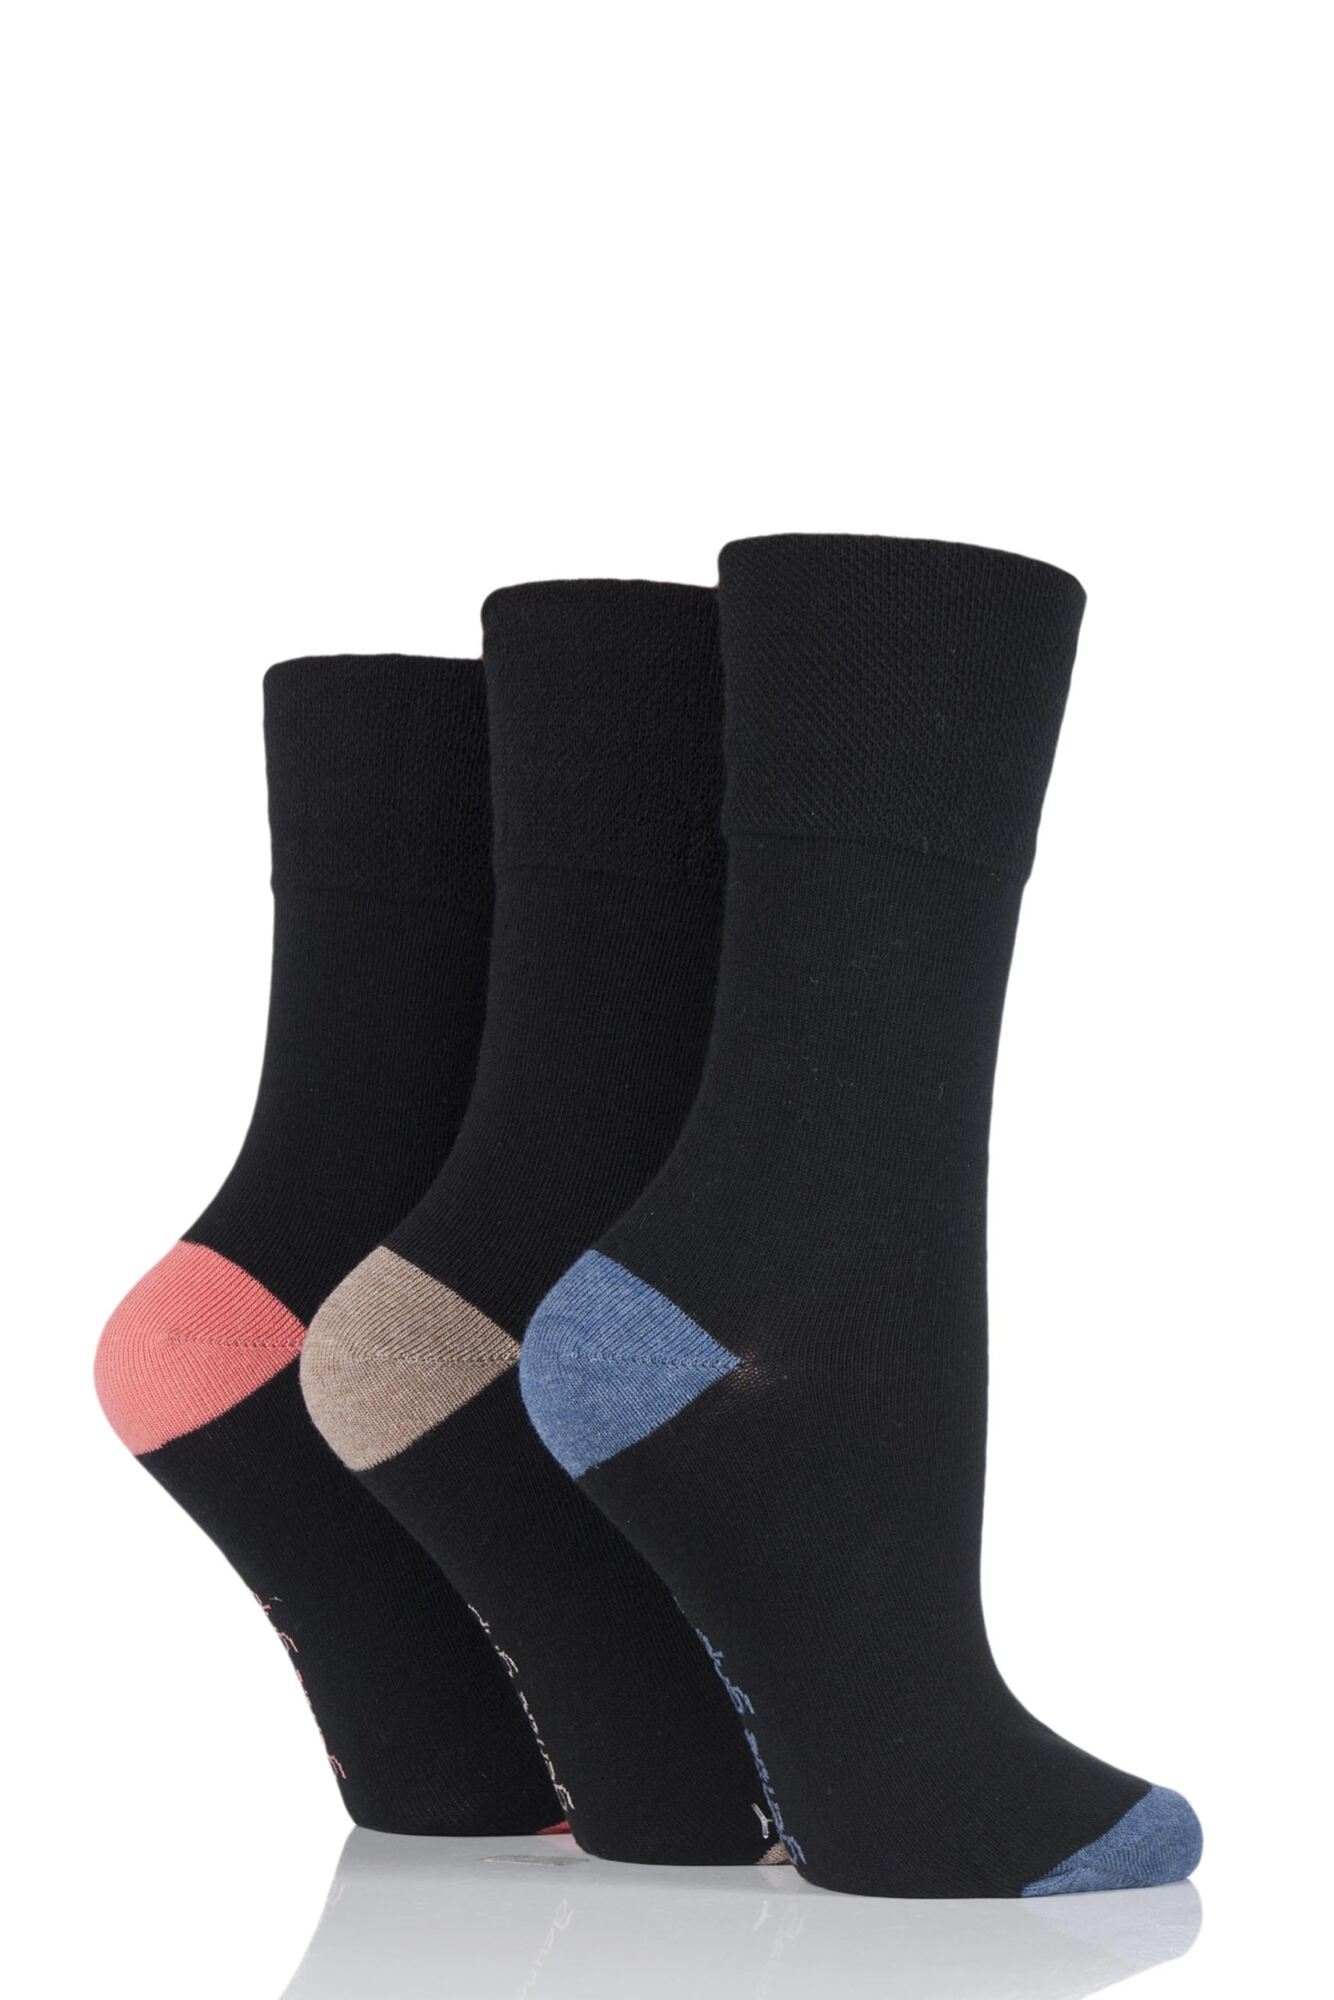 Gentle Grip Contrast Heel and Toe Socks | SOCKSHOP